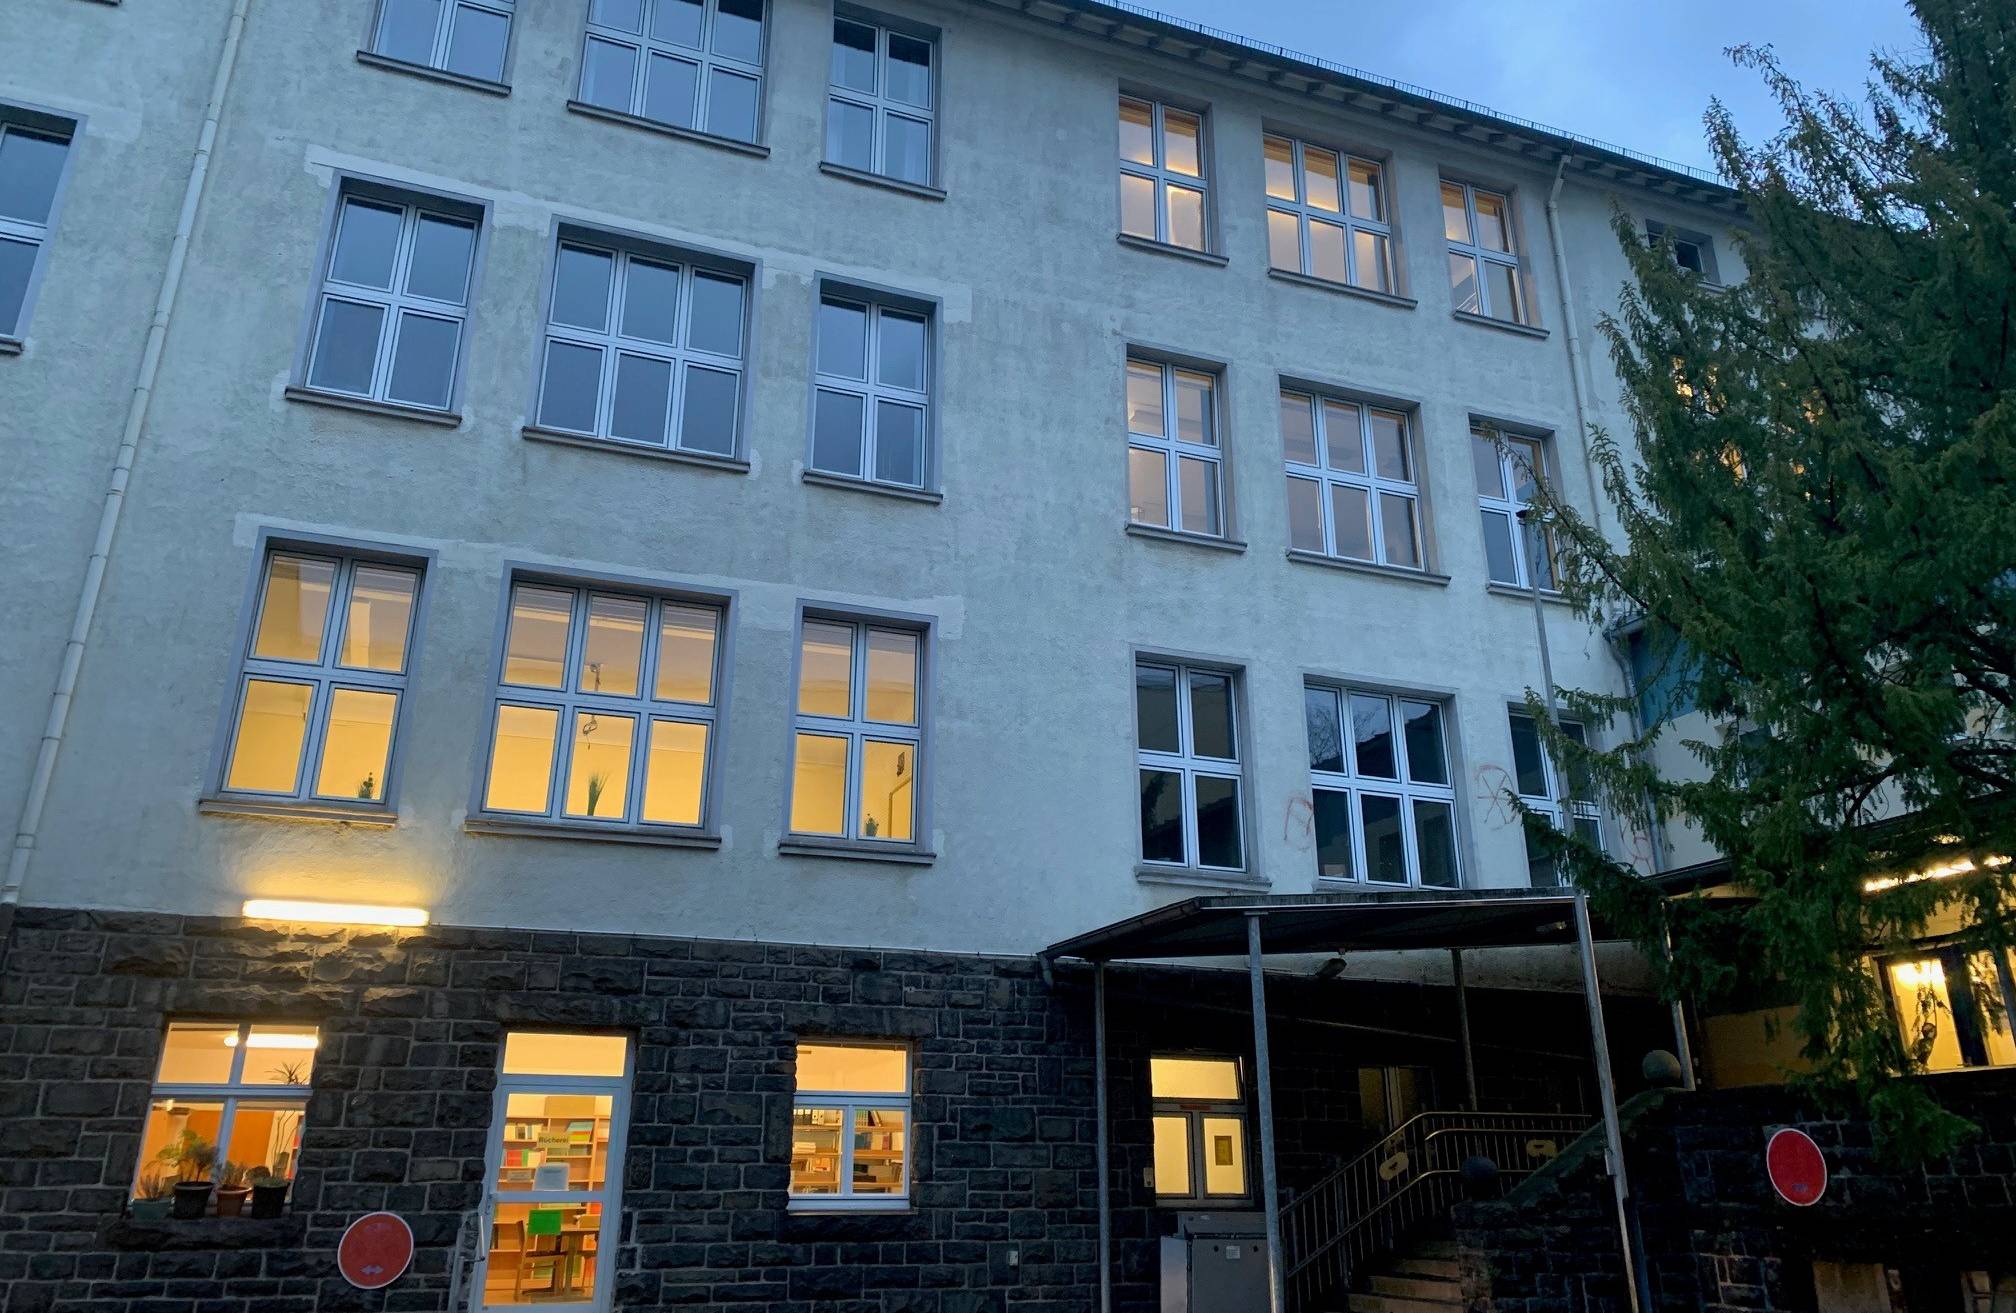 Das Schulgebäude an der Pfalzgrafenstraße.